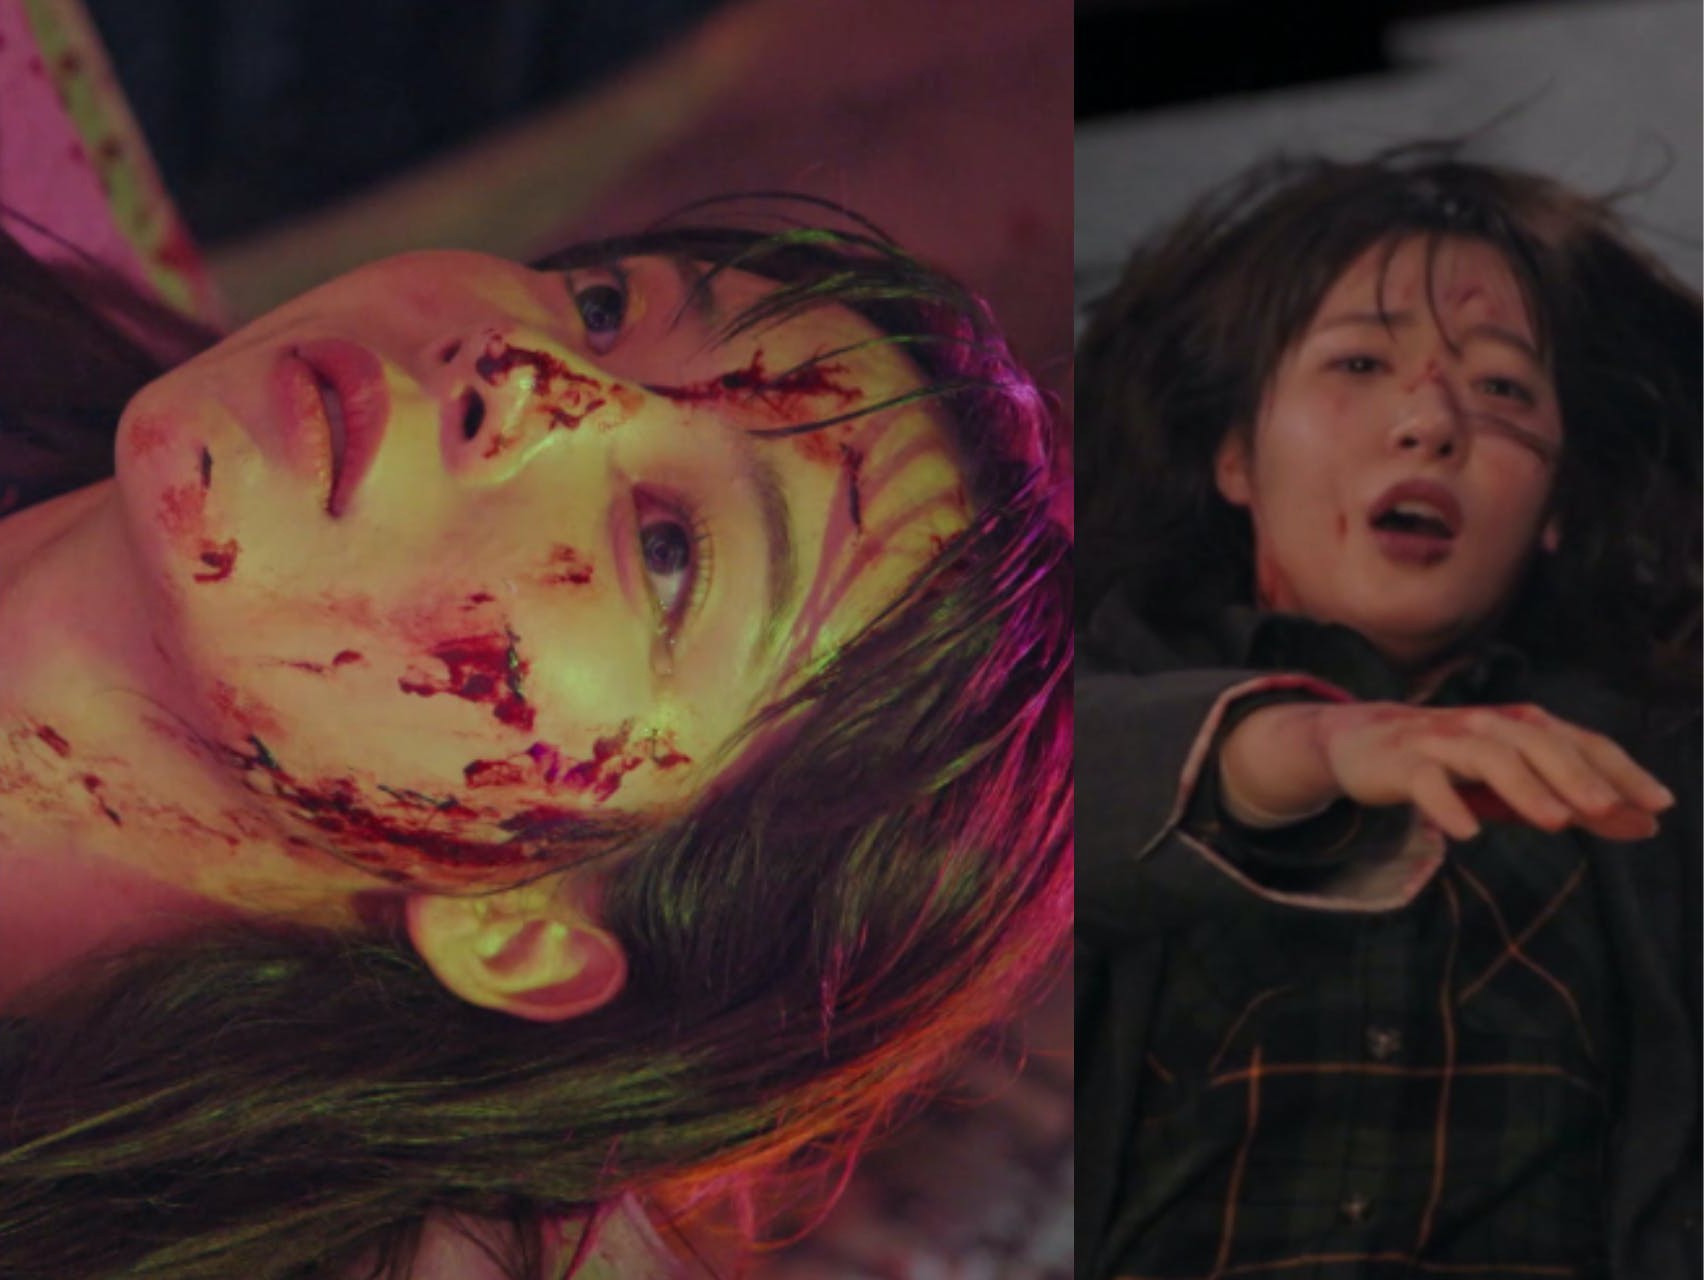 Phim Penthouse - Cuộc chiến thượng lưu, mặt tối xã hội Hàn Quốc, thủ phạm giết người là ai?